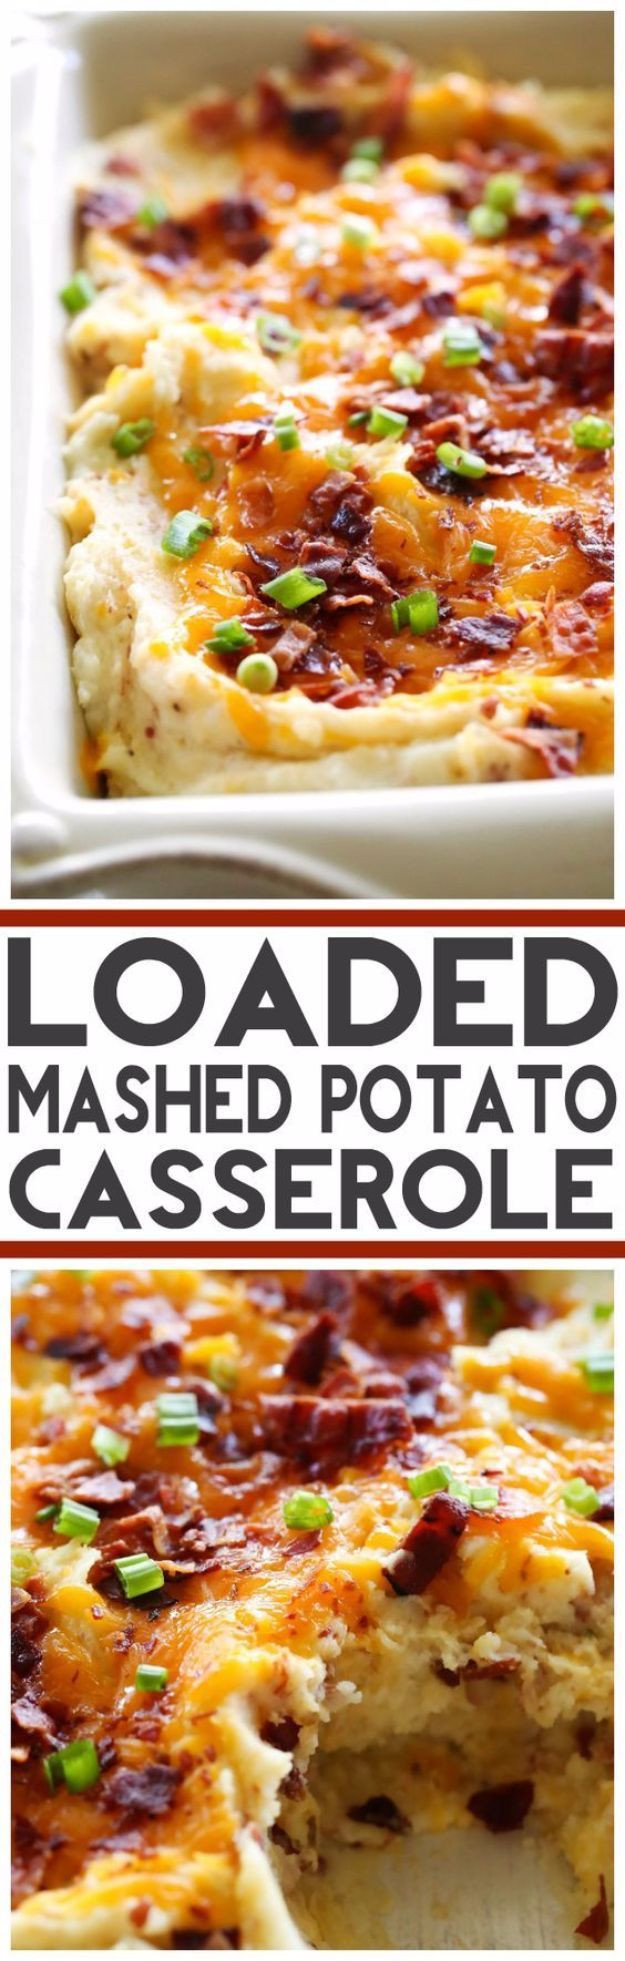 Easter Casseroles For Dinner
 Best Easter Dinner Recipes Loaded Mashed Potato